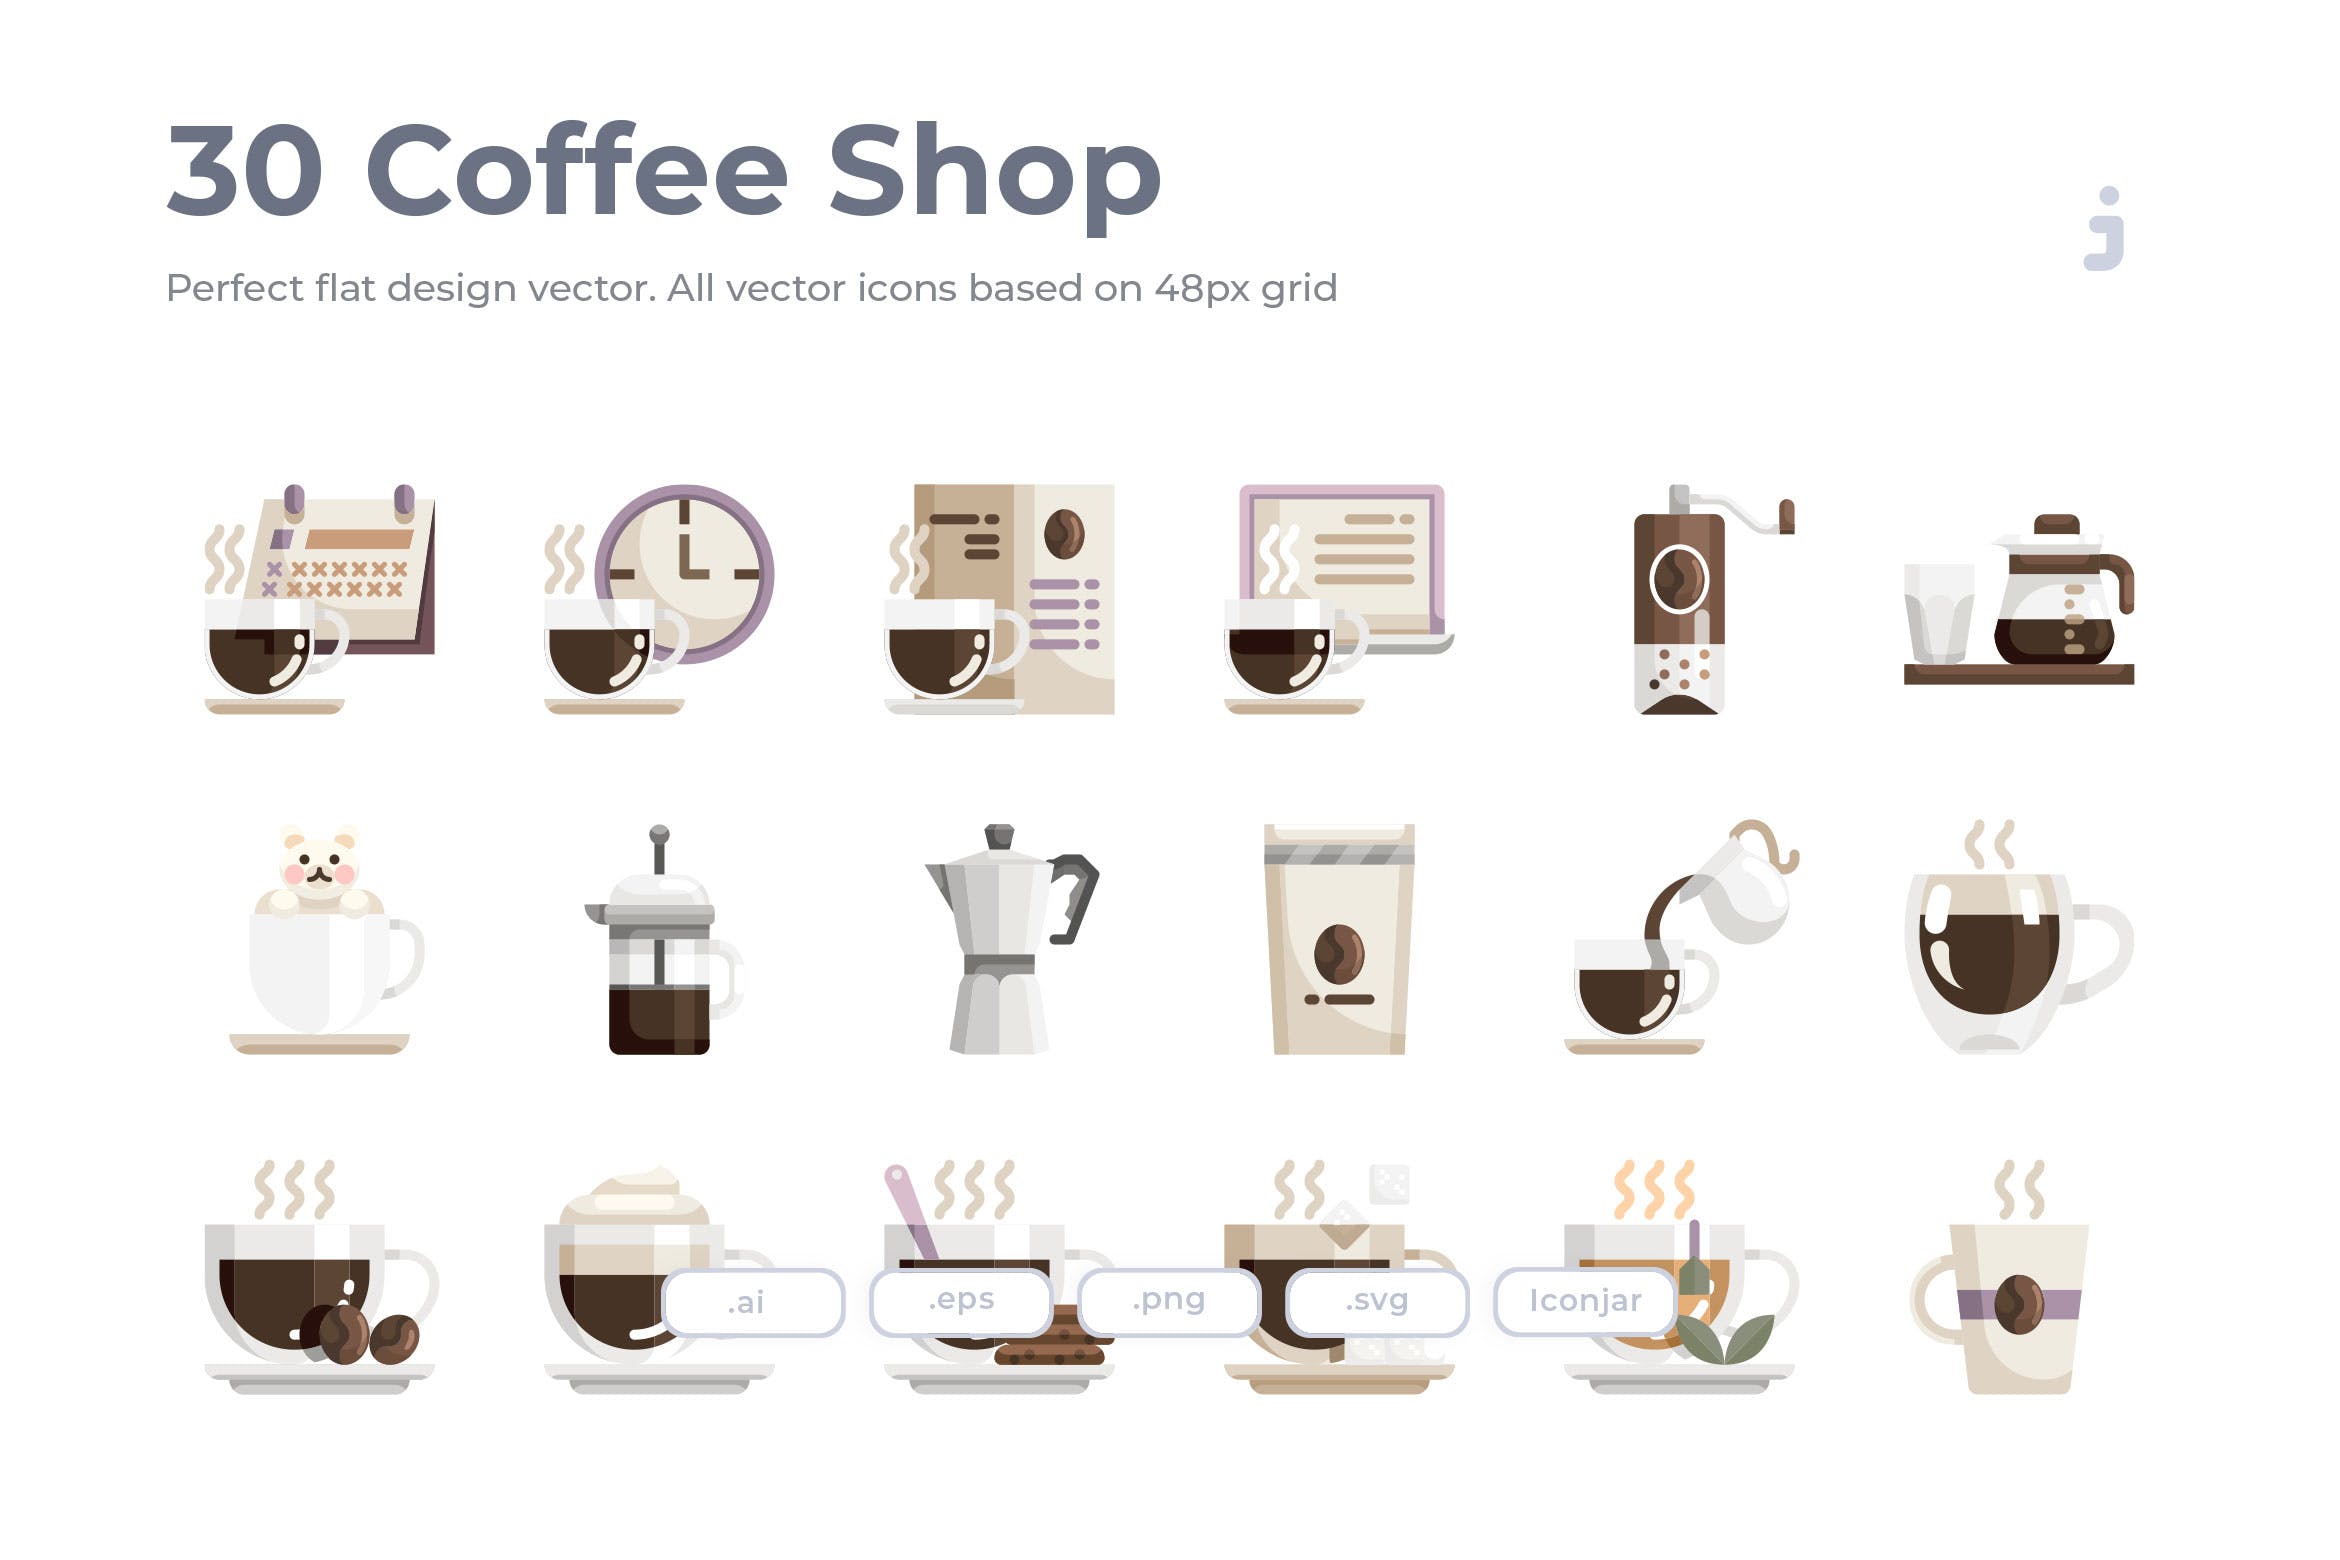 30枚咖啡/咖啡店扁平设计风格矢量蚂蚁素材精选图标素材 30 Coffee Shop Icons – Flat插图